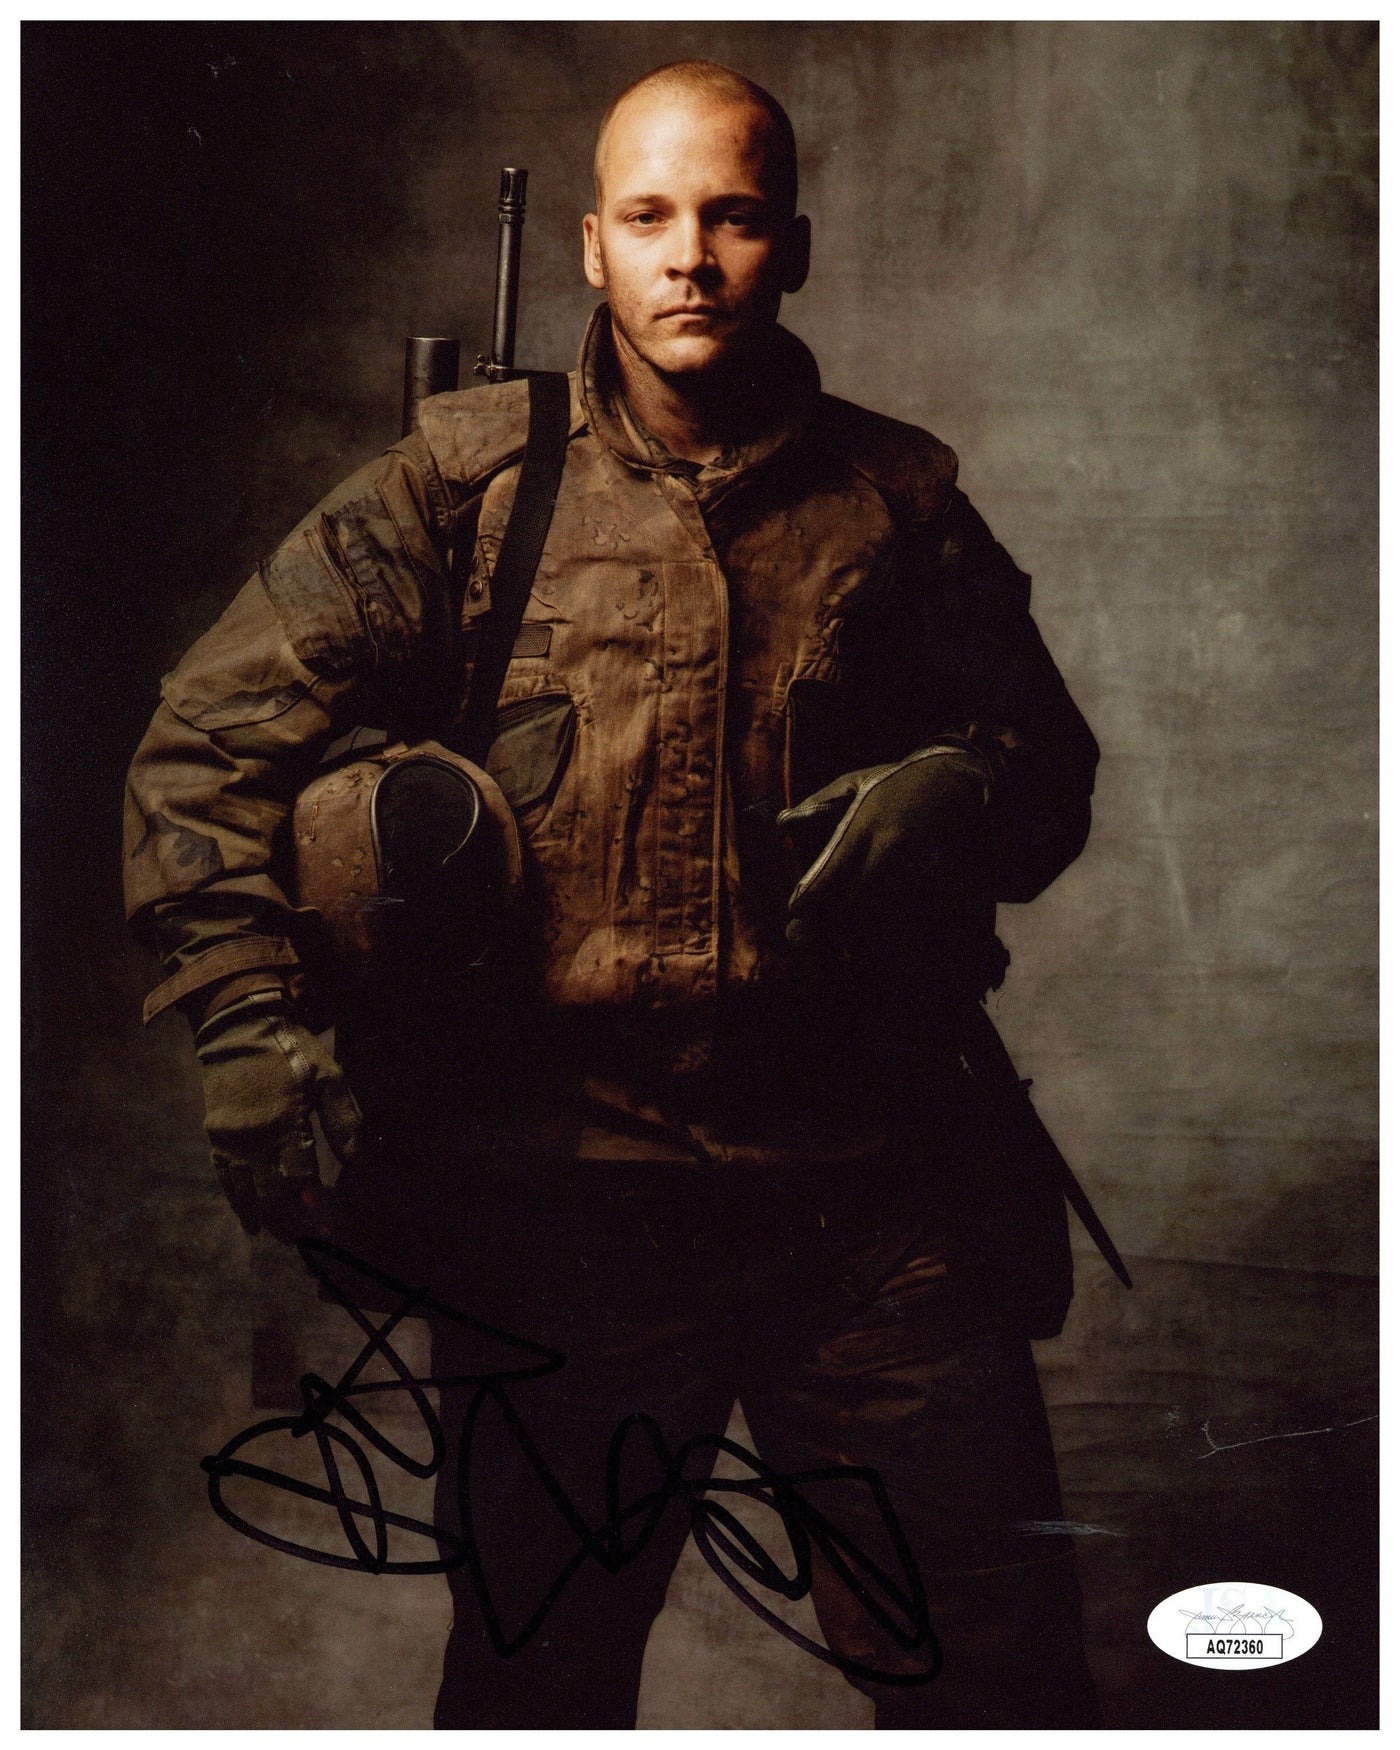 Peter Sarsgaard Signed 8X10 Photo Jarhead Autographed JSA COA 2